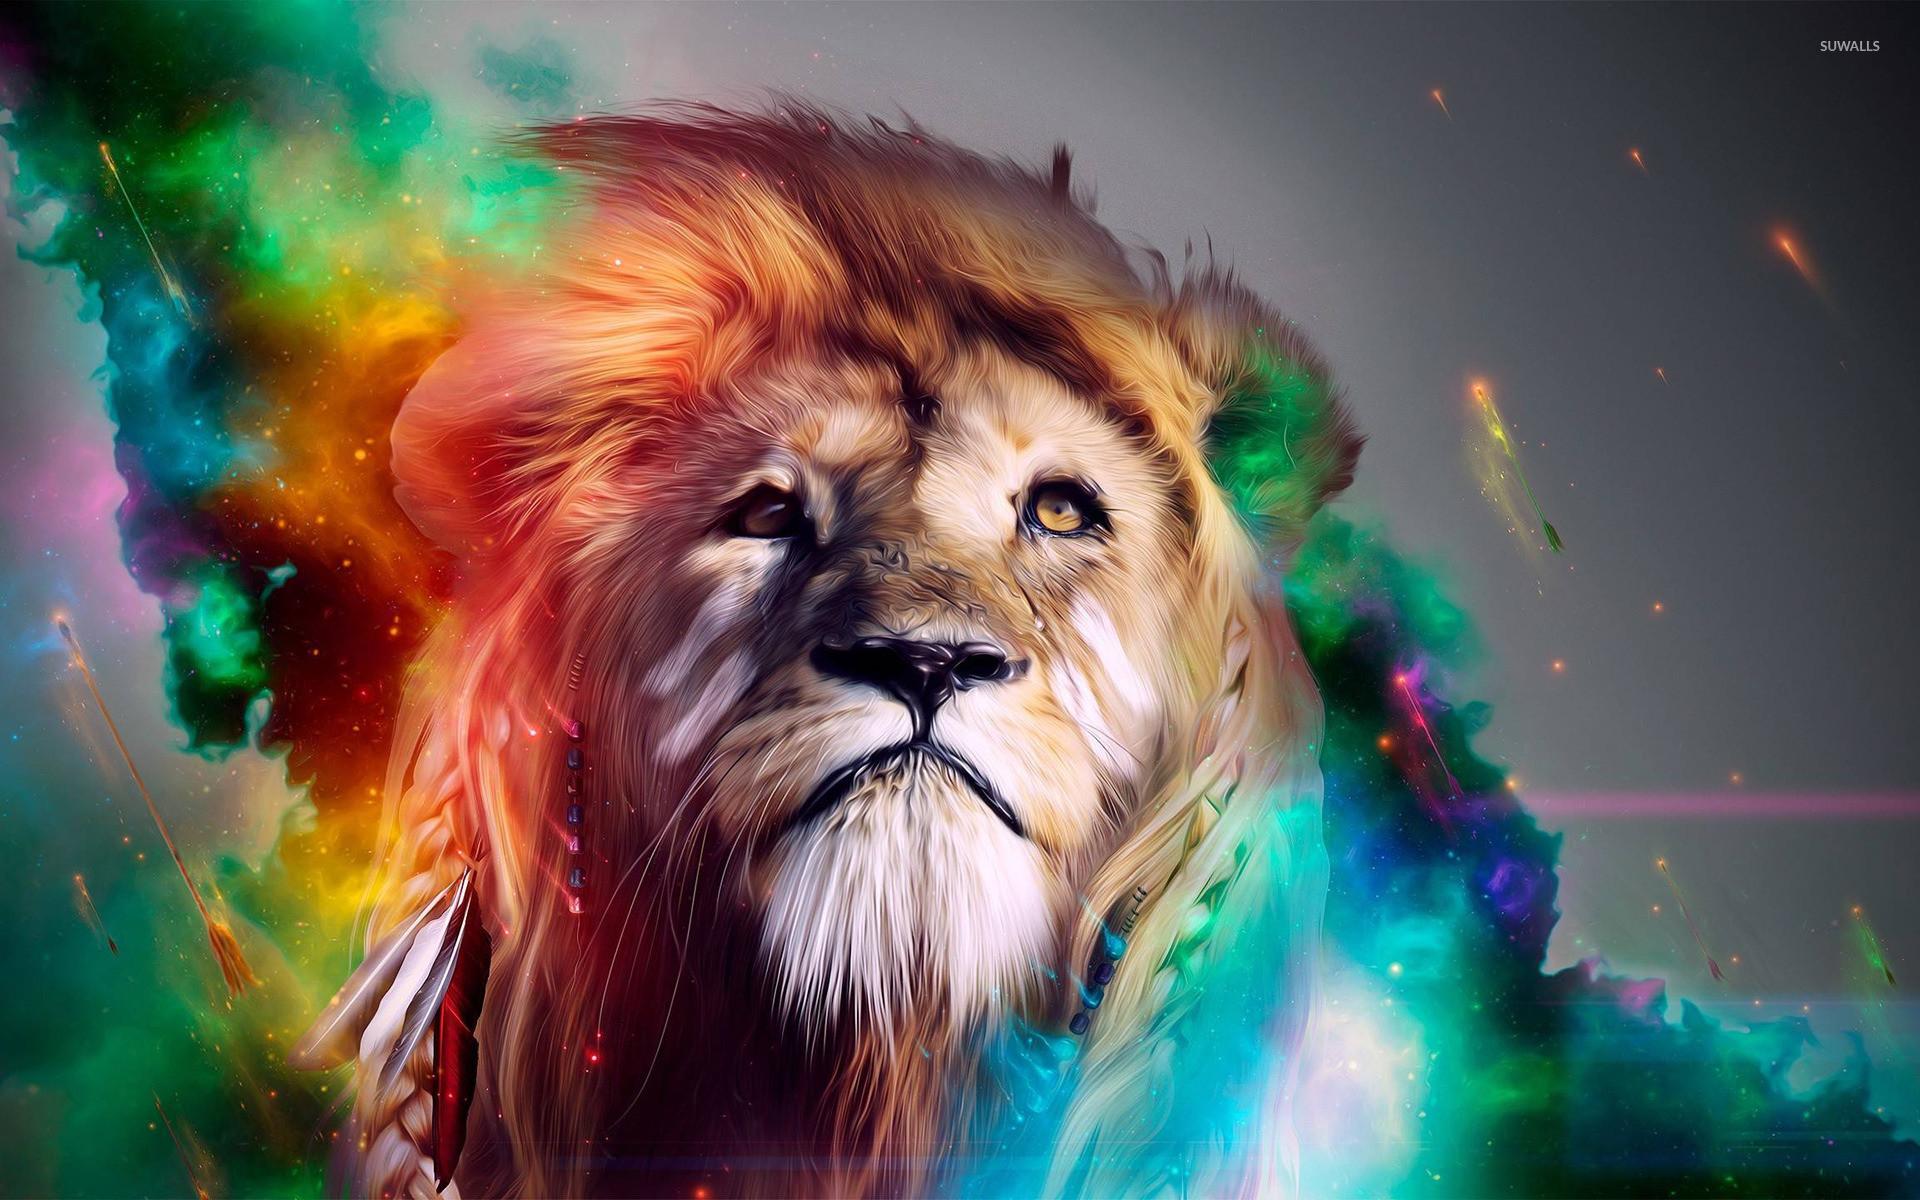 Colorful Lion Wallpaper